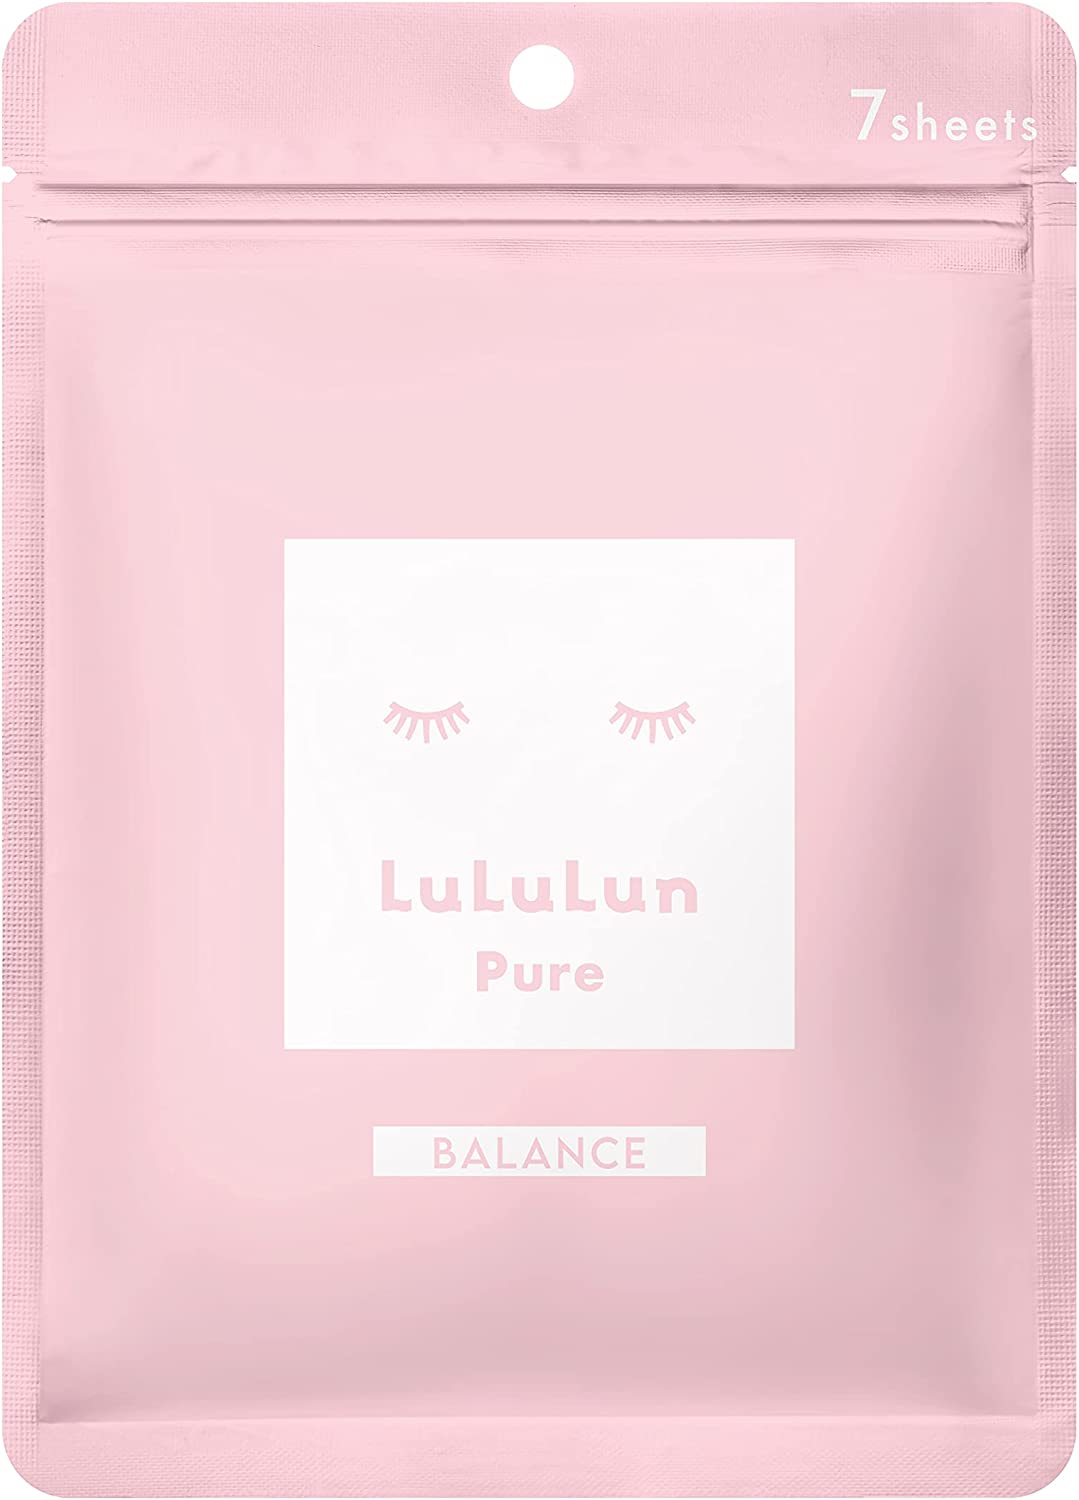 LuLuLun(ルルルン) ピュア ピンク(バランス)の商品画像5 